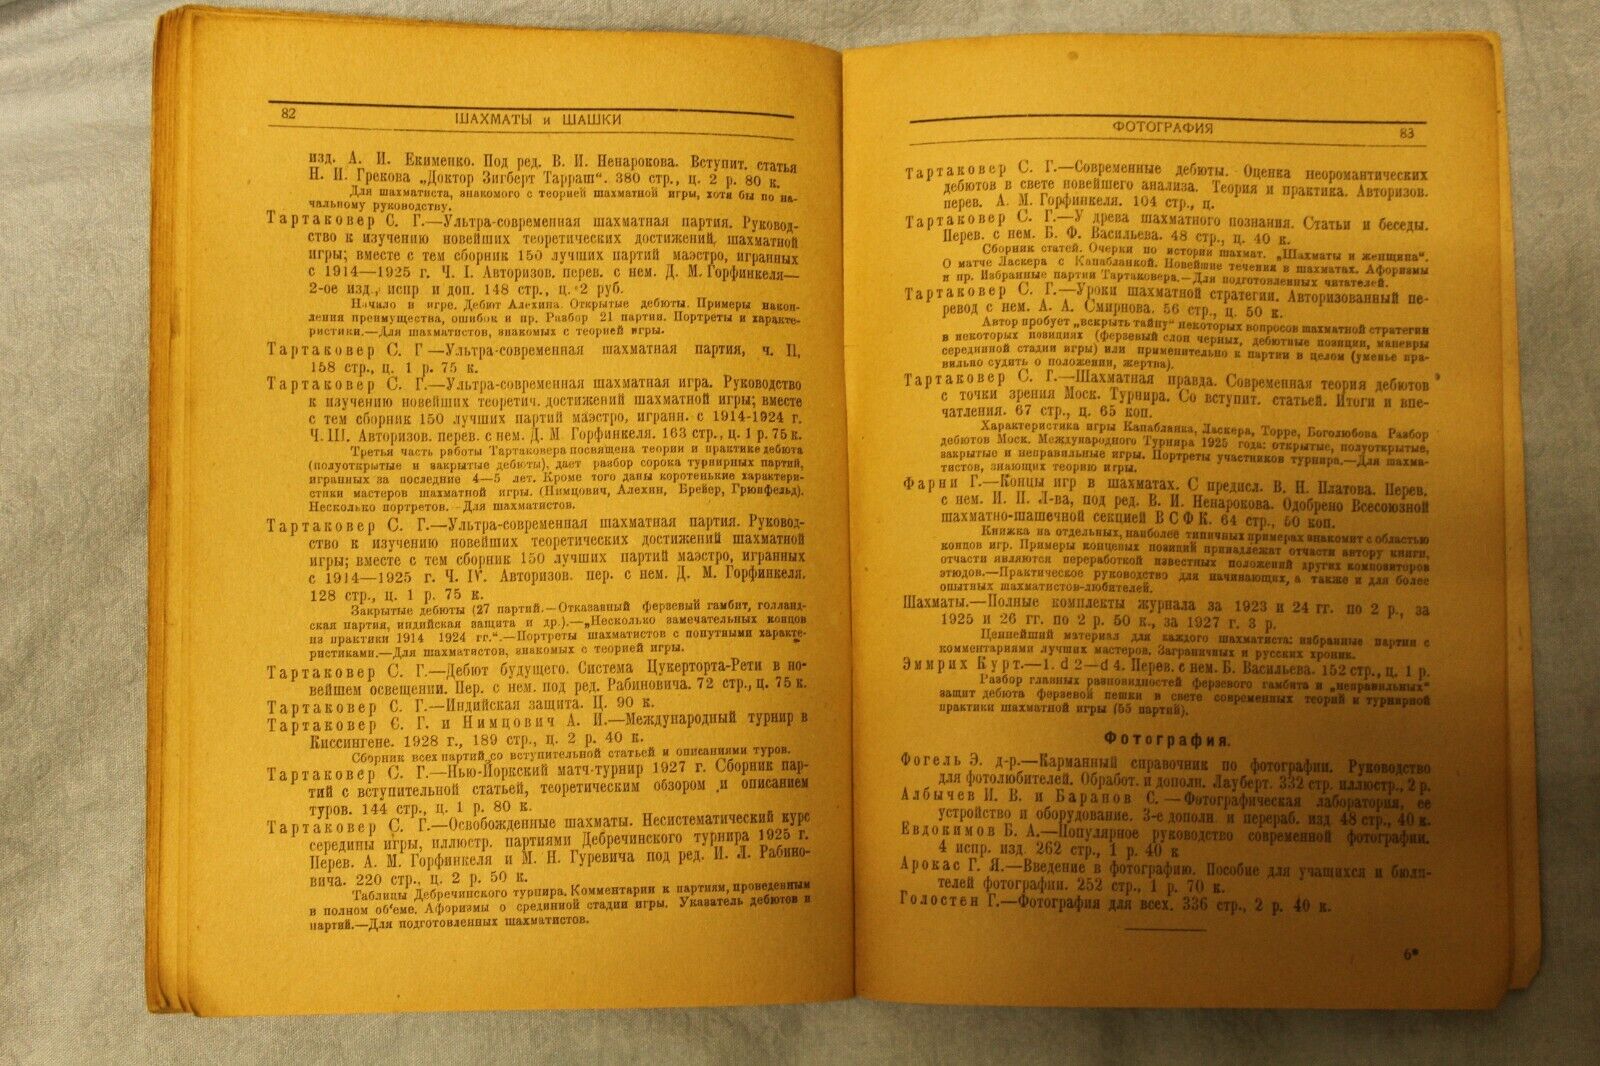 11687.Soviet Chess book Baturinsky-Karpov library: tourism hygiene chess&sport 1930